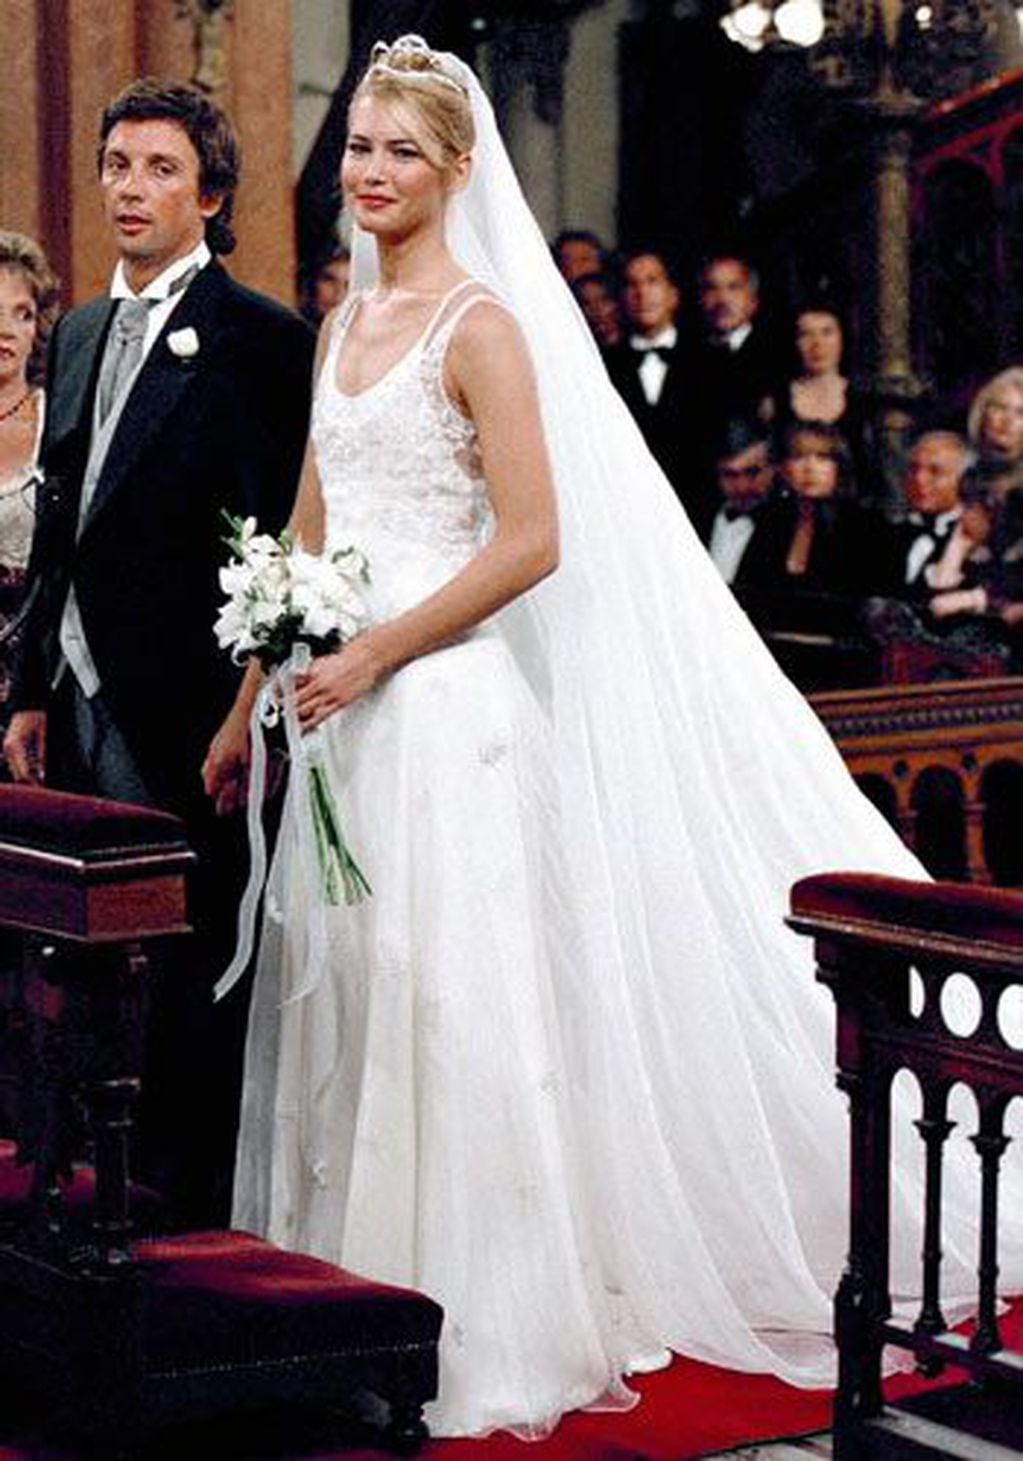 En 1998, Valeria Mazza y Alejandro Gravier se casaron después de varios años de noviazgo y la ceremonia fue televisada.